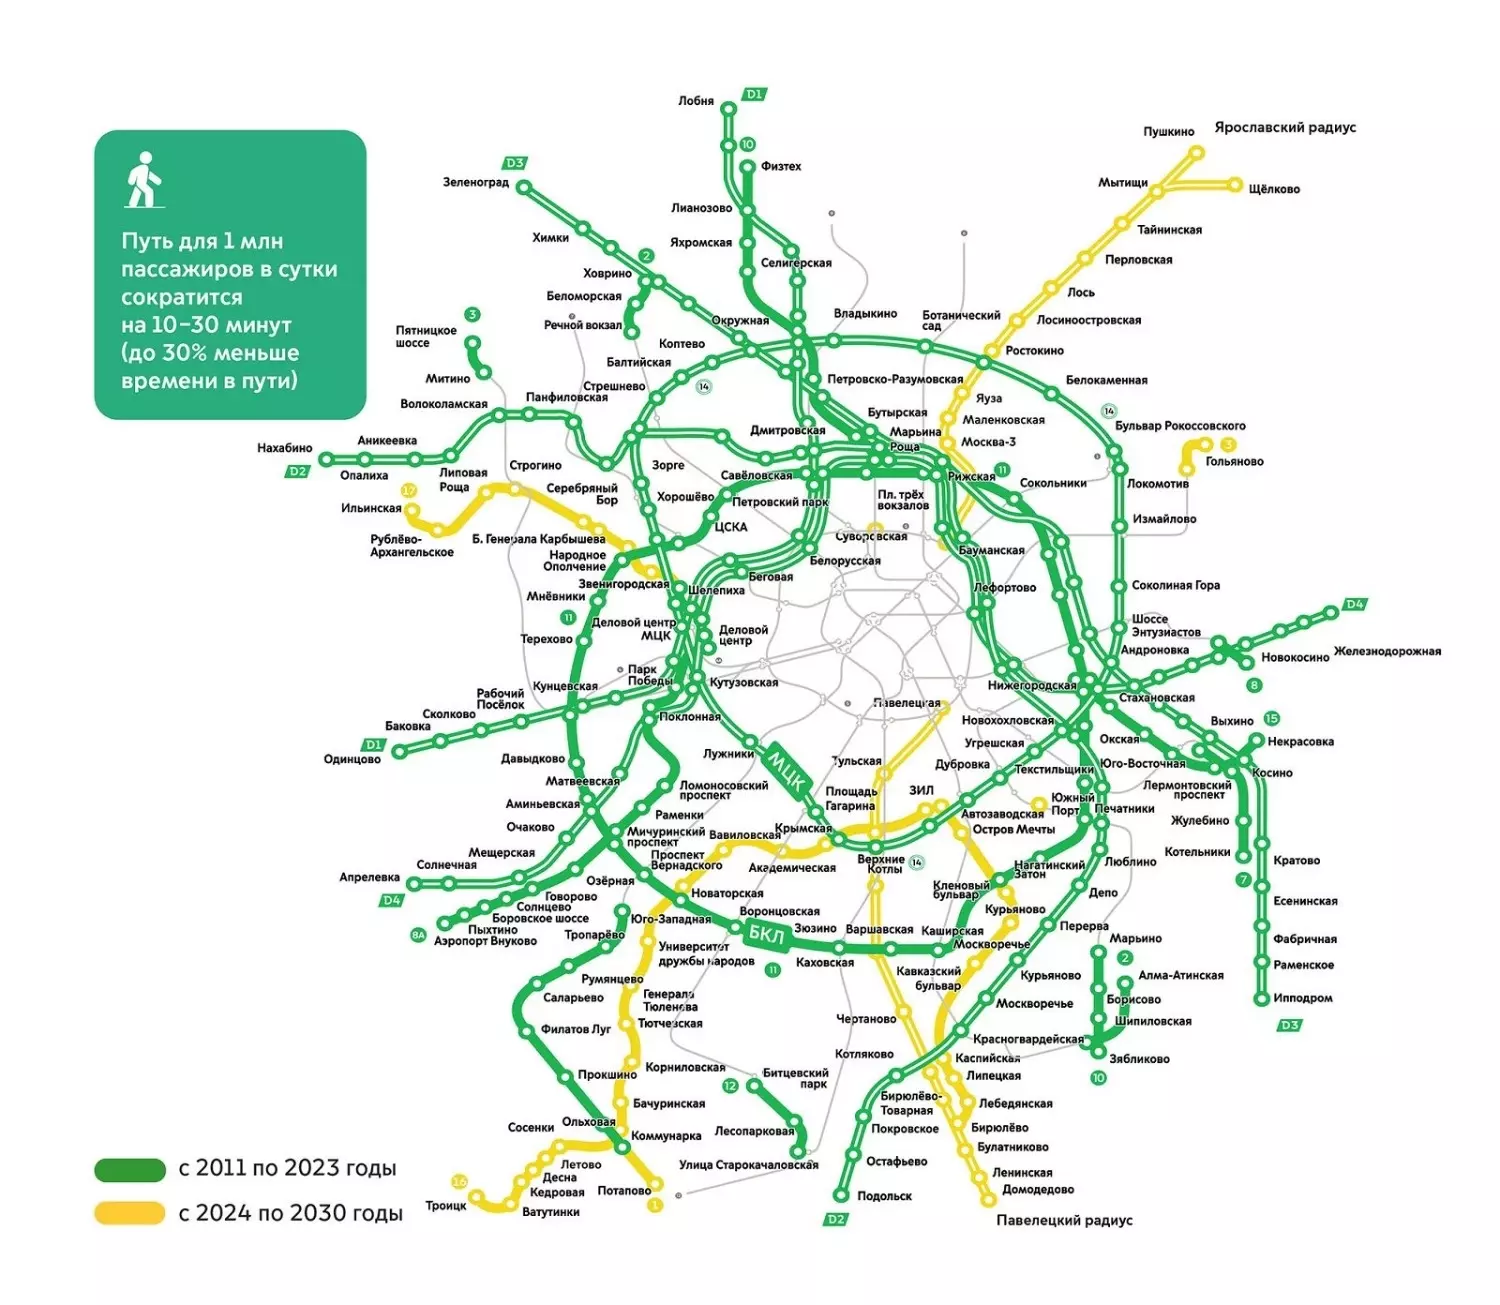 До 2030 года в Москве появятся 3 новые ветки метрополитена и 48 станций метро и МЦД